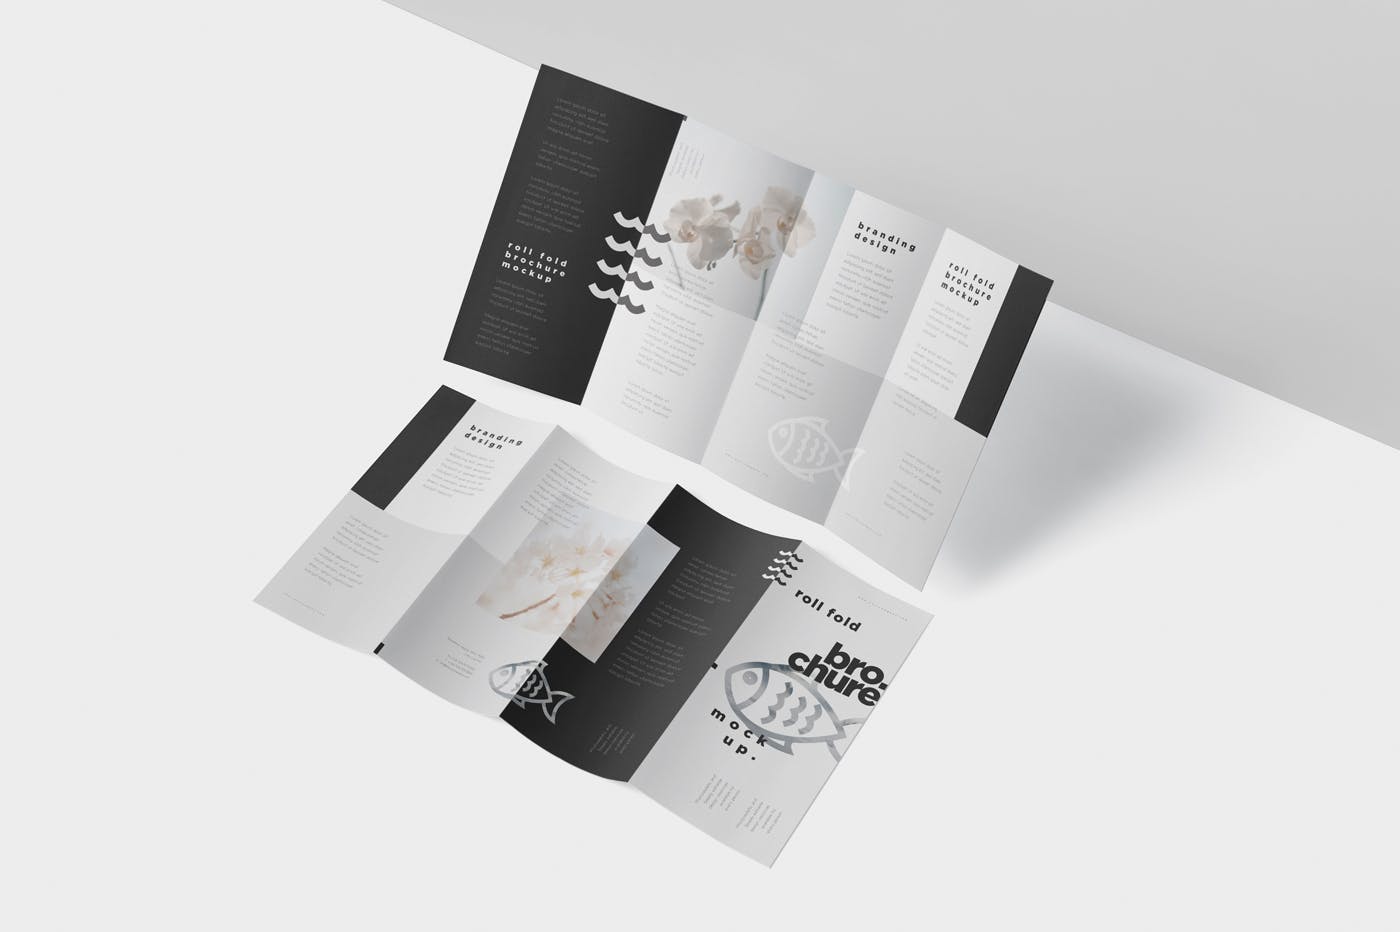 折叠设计风格企业传单/宣传册设计样机16图库精选 Roll-Fold Brochure Mockup – DL DIN Lang Size插图(3)